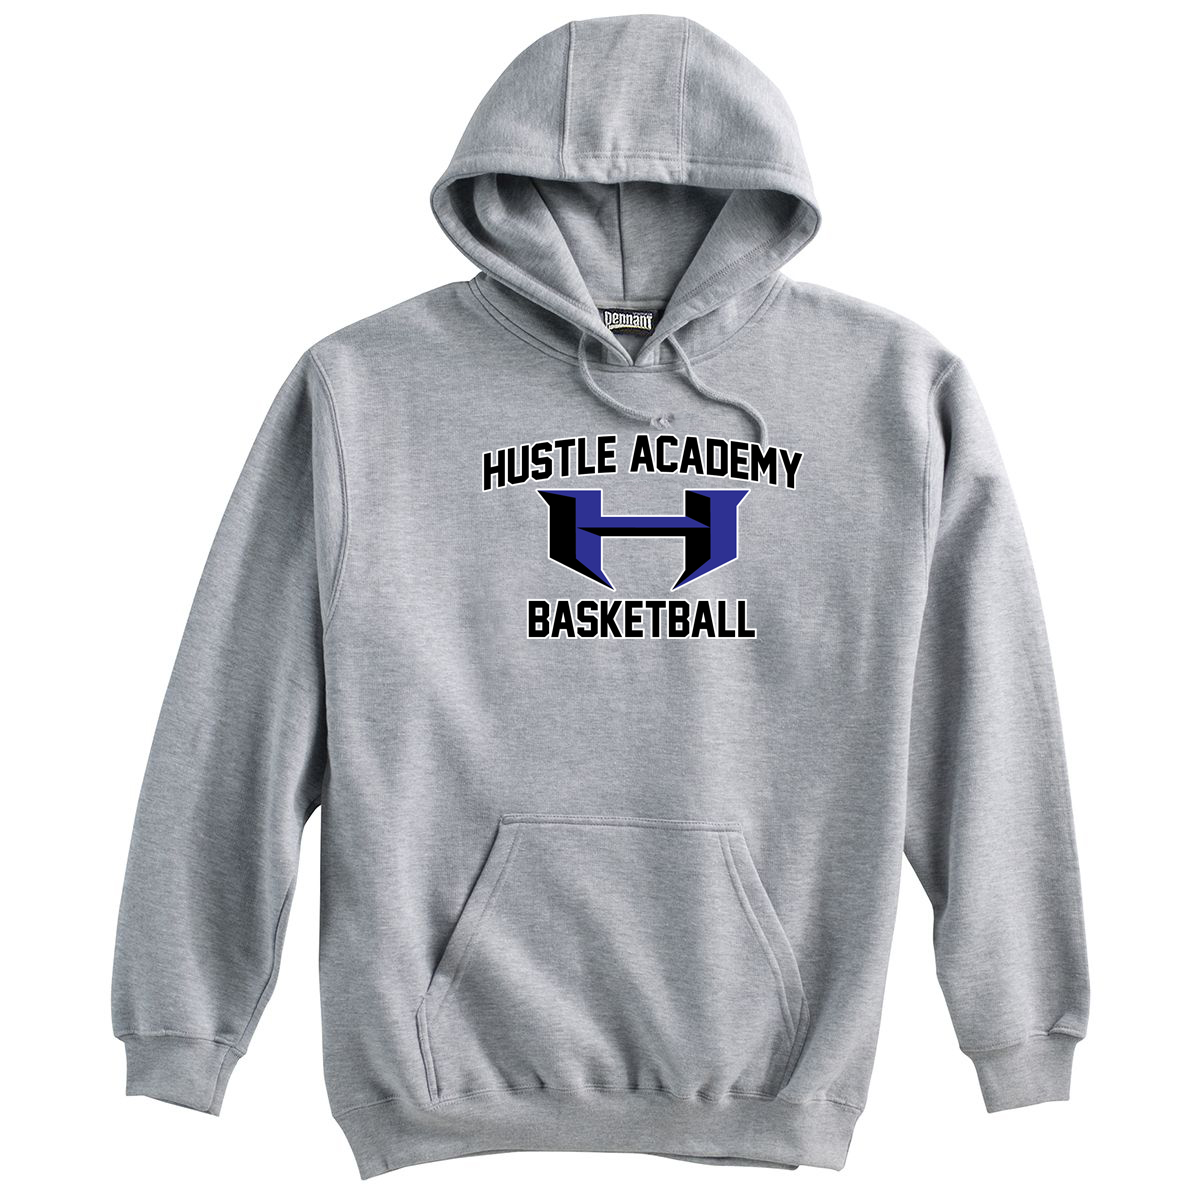 Hustle Academy Basketball Sweatshirt